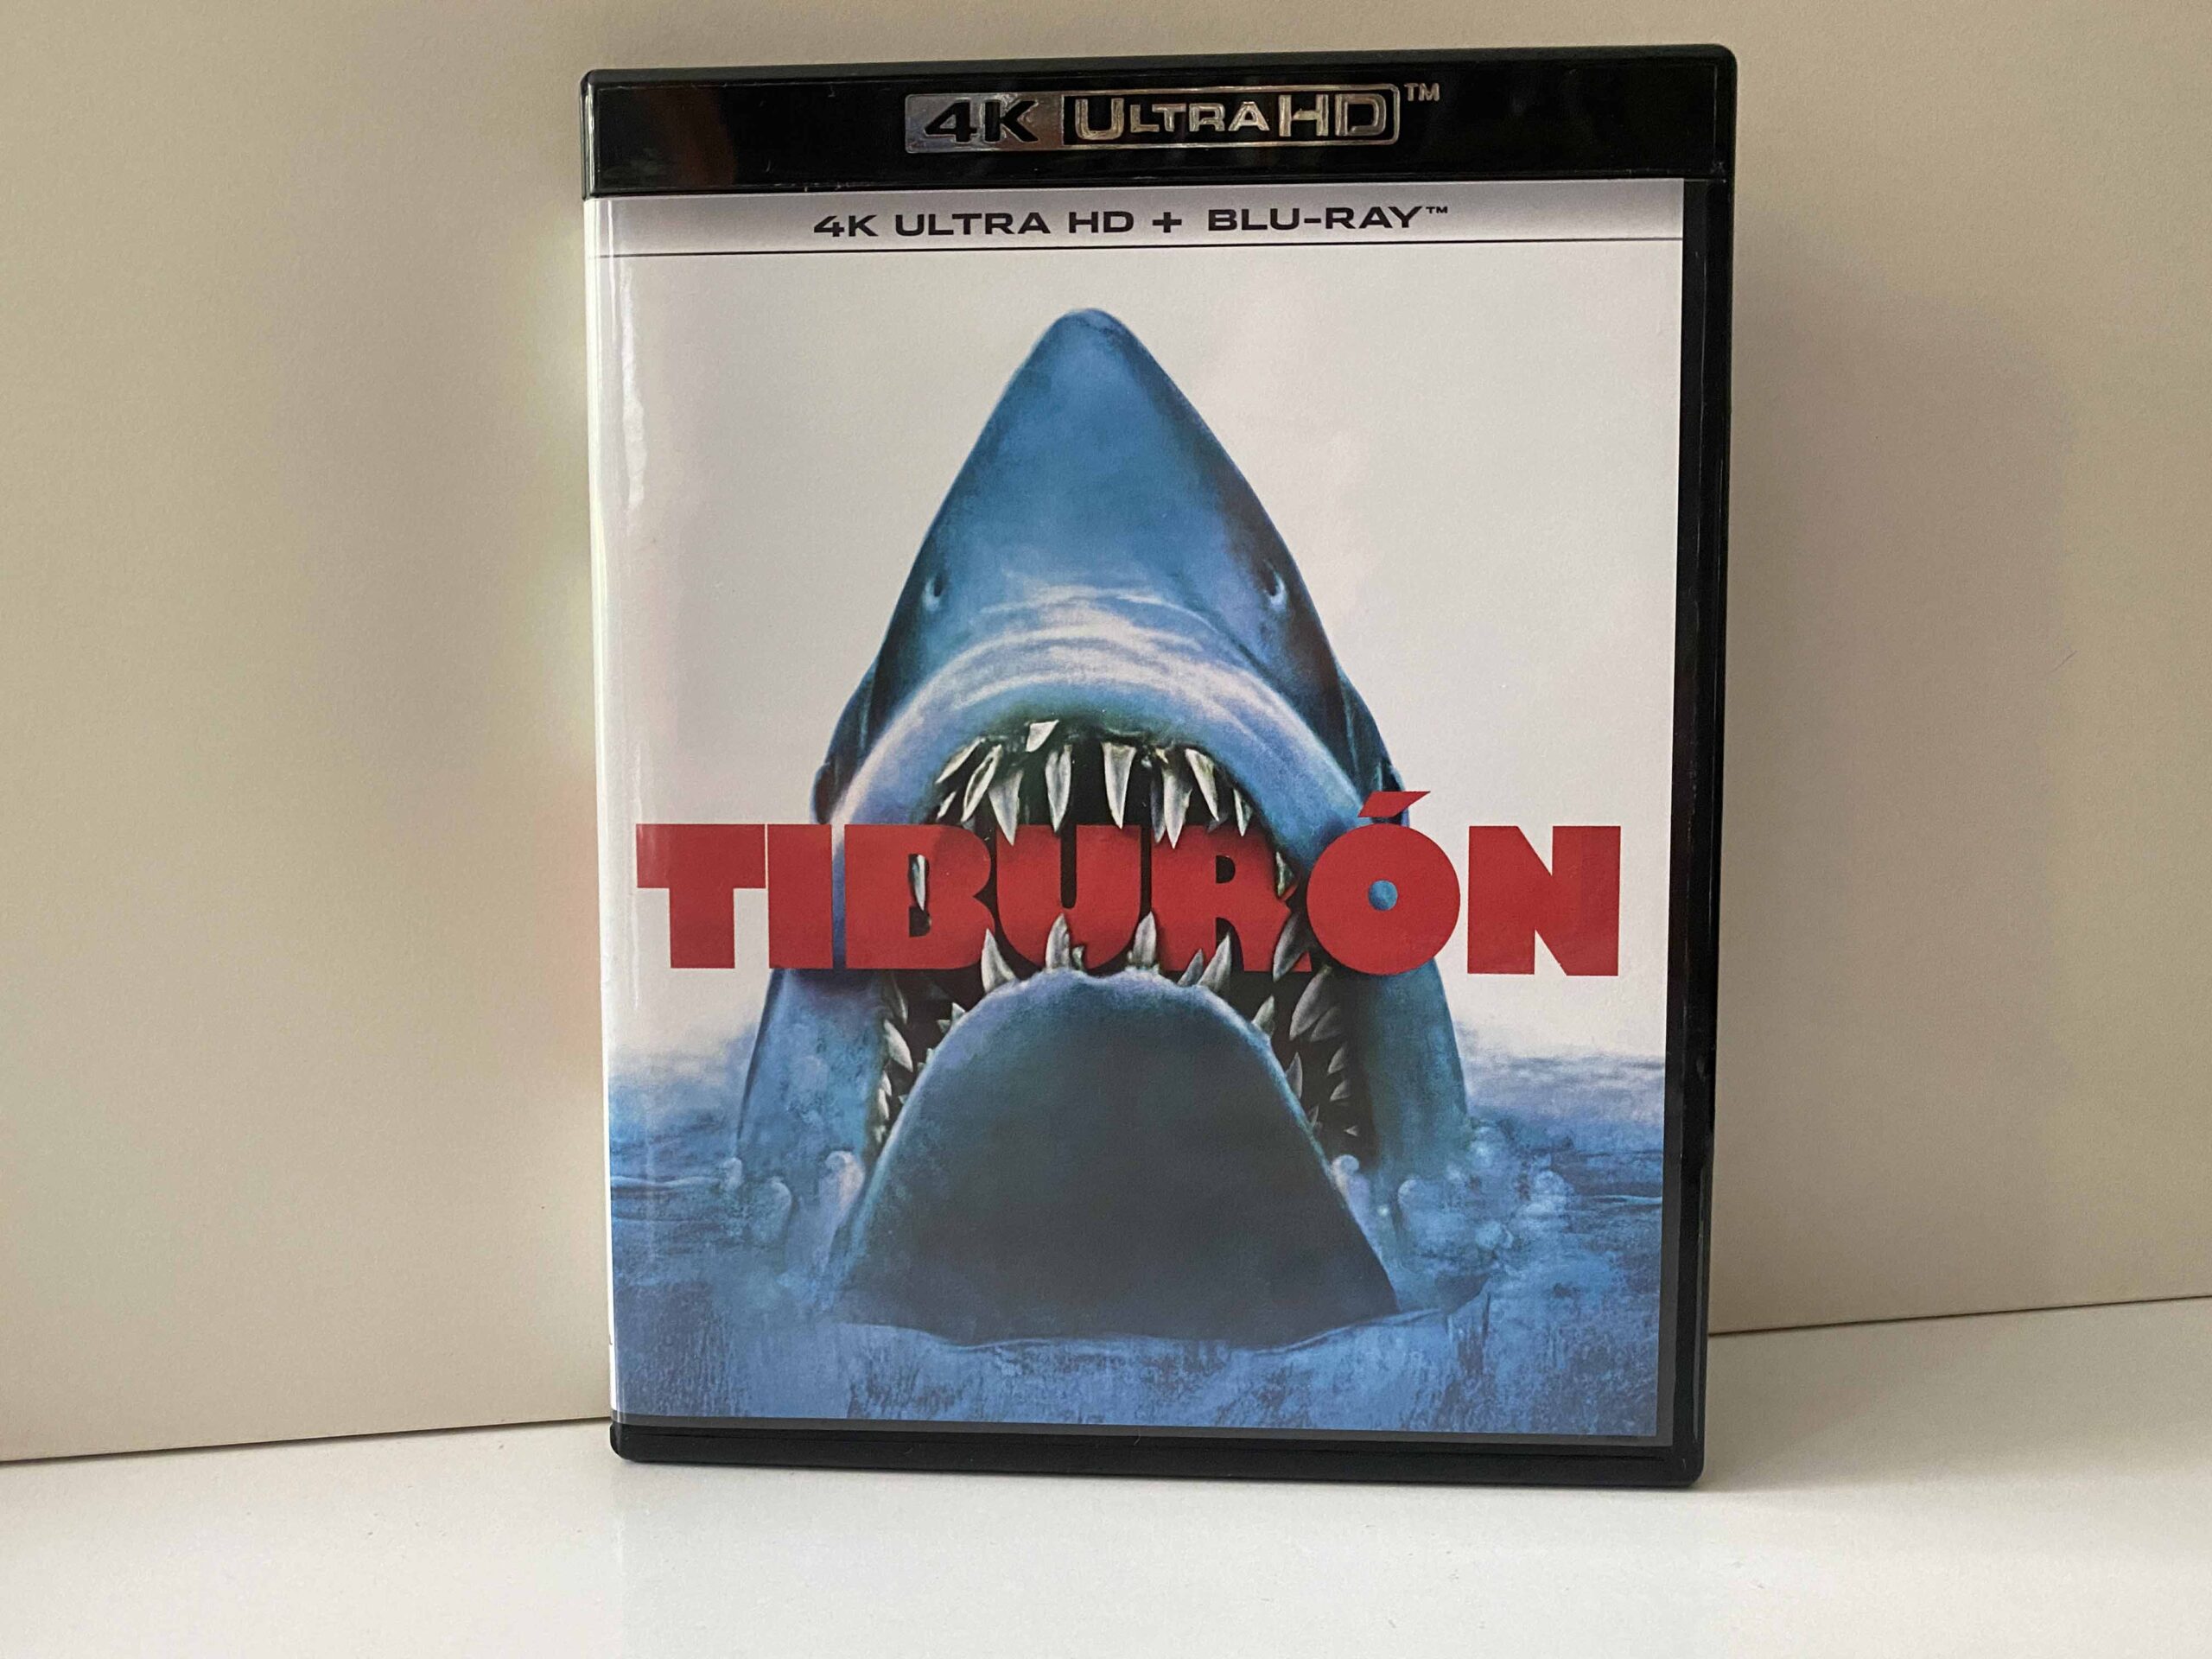 Análisis de la edición 4k ultra HD + Blu-ray de Tiburón